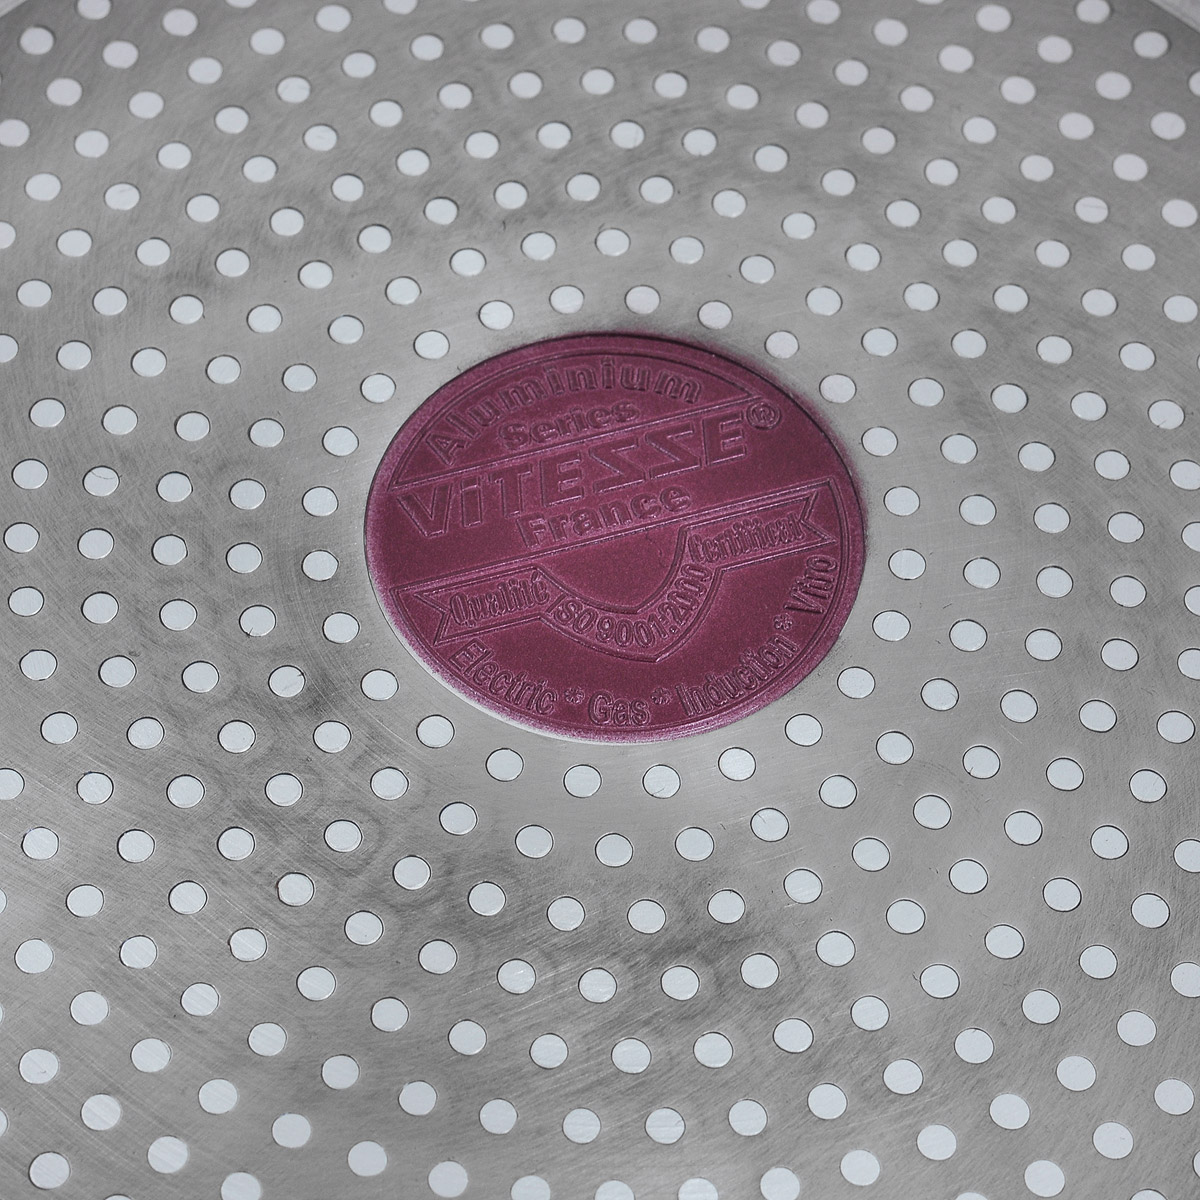 Сковорода Vitesse "Renaissance" с крышкой, с керамическим покрытием, цвет: бордовый. Диаметр 26 см + ПОДАРОК: Форма силиконовая для яиц и оладьев, 11,5 х 11 см